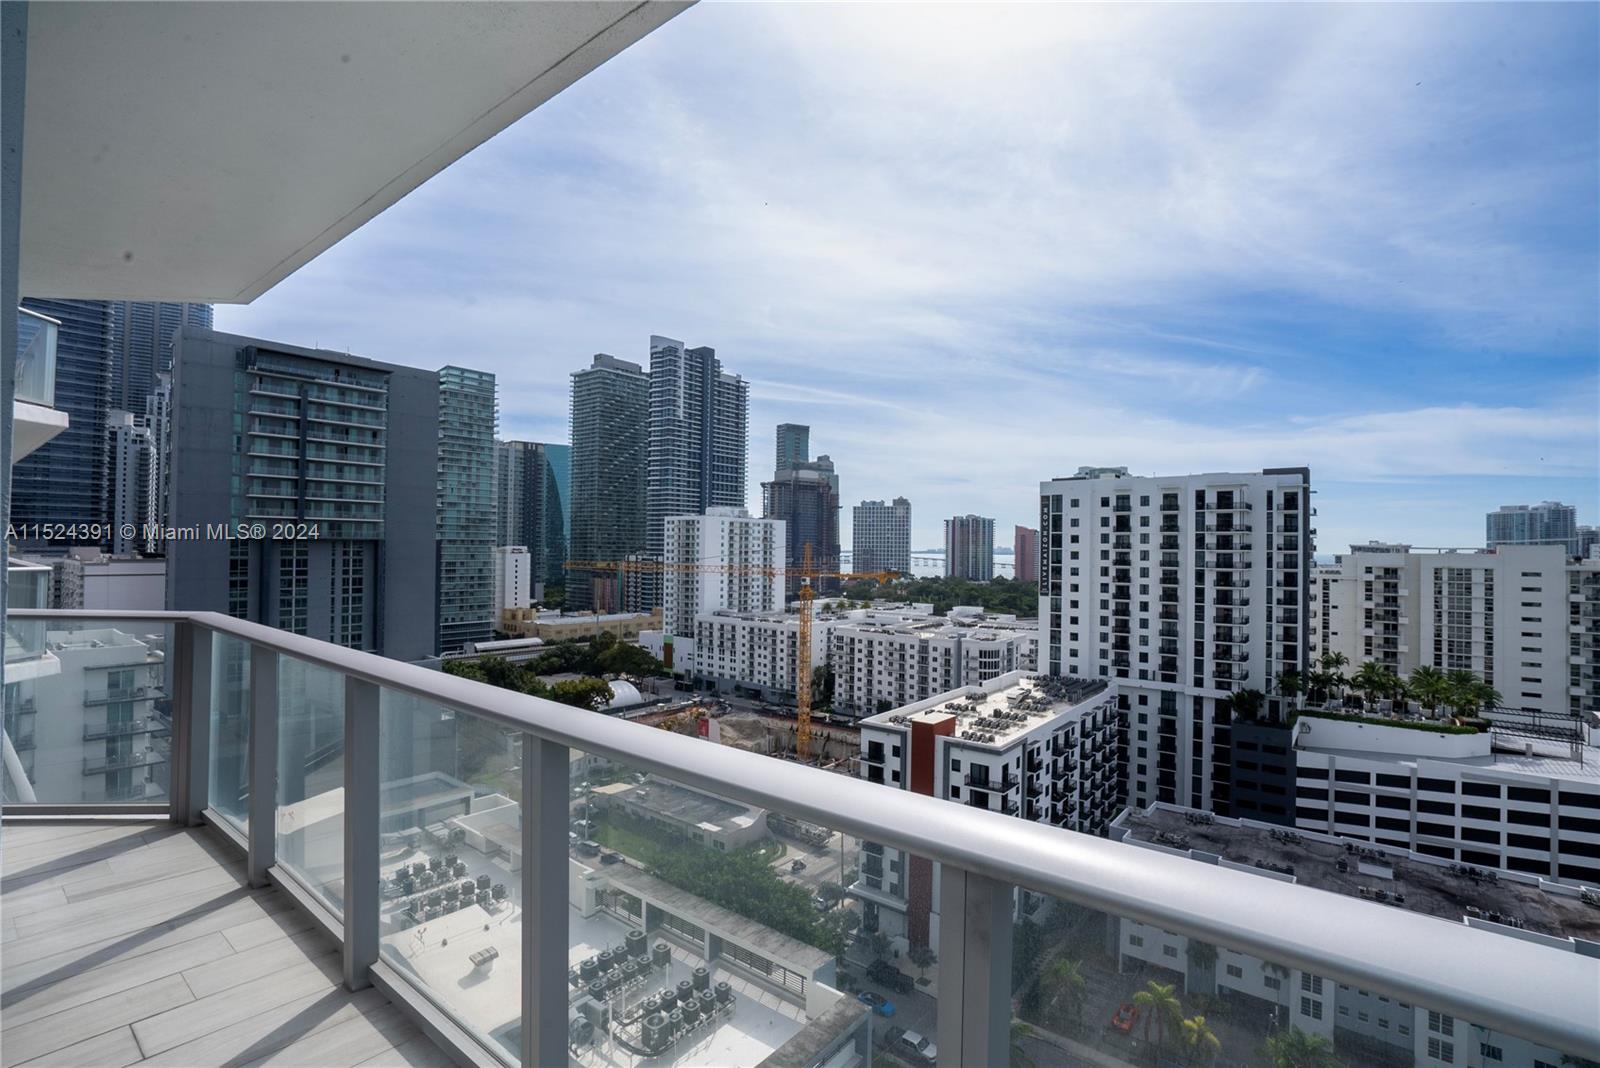 View Miami, FL 33130 condo